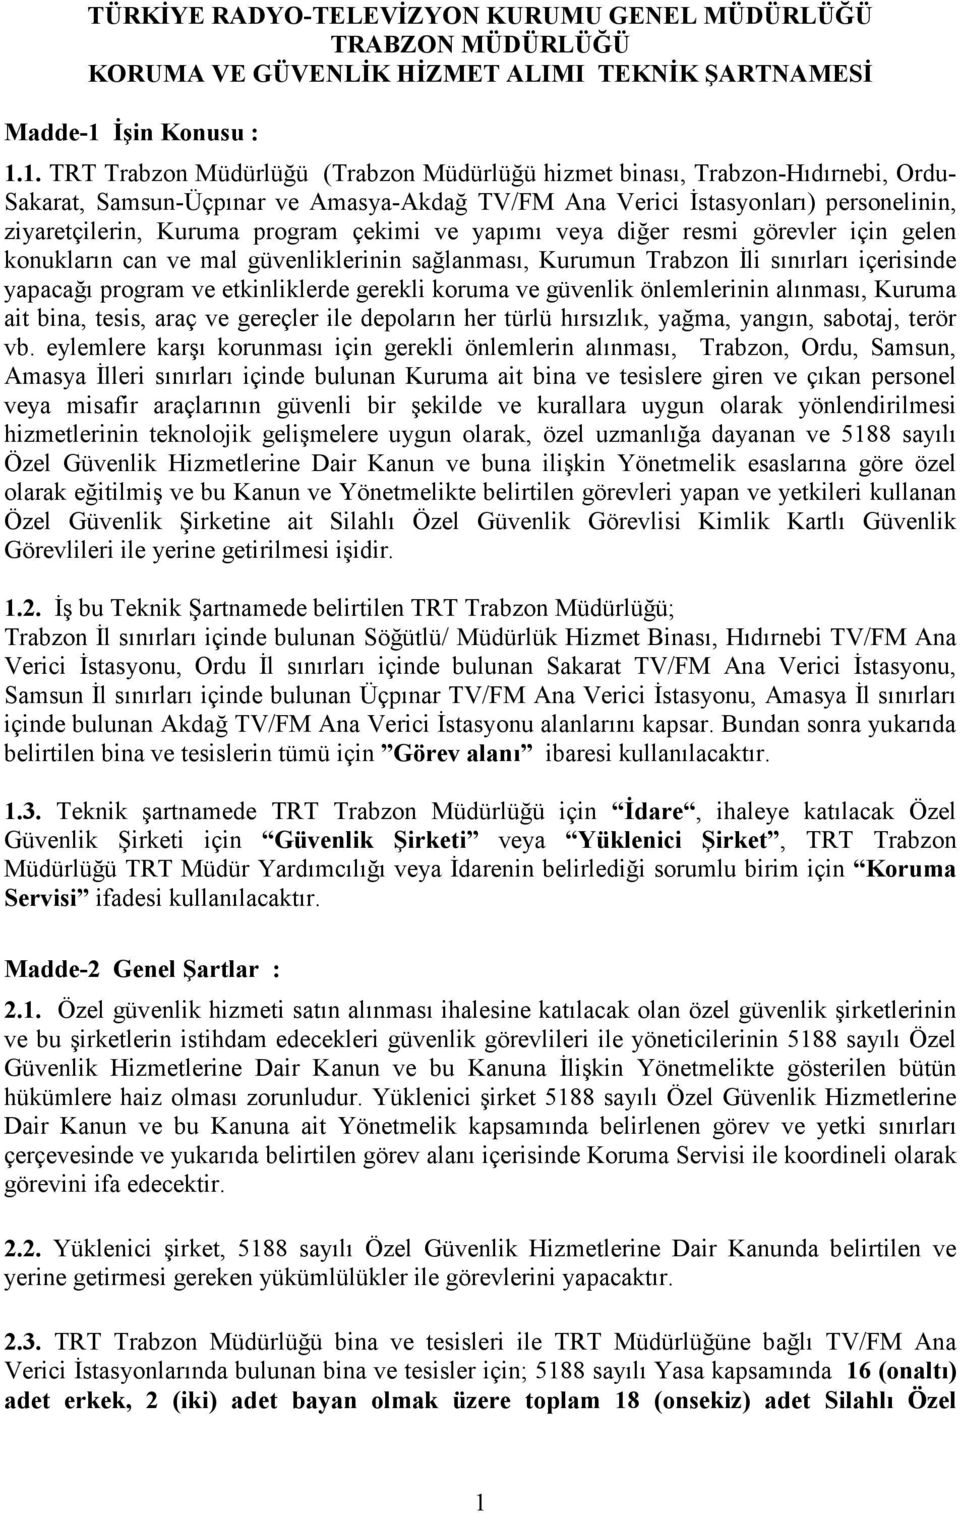 1. TRT Trabzon Müdürlüğü (Trabzon Müdürlüğü hizmet binası, Trabzon-Hıdırnebi, Ordu- Sakarat, Samsun-Üçpınar ve Amasya-Akdağ TV/FM Ana Verici İstasyonları) personelinin, ziyaretçilerin, Kuruma program